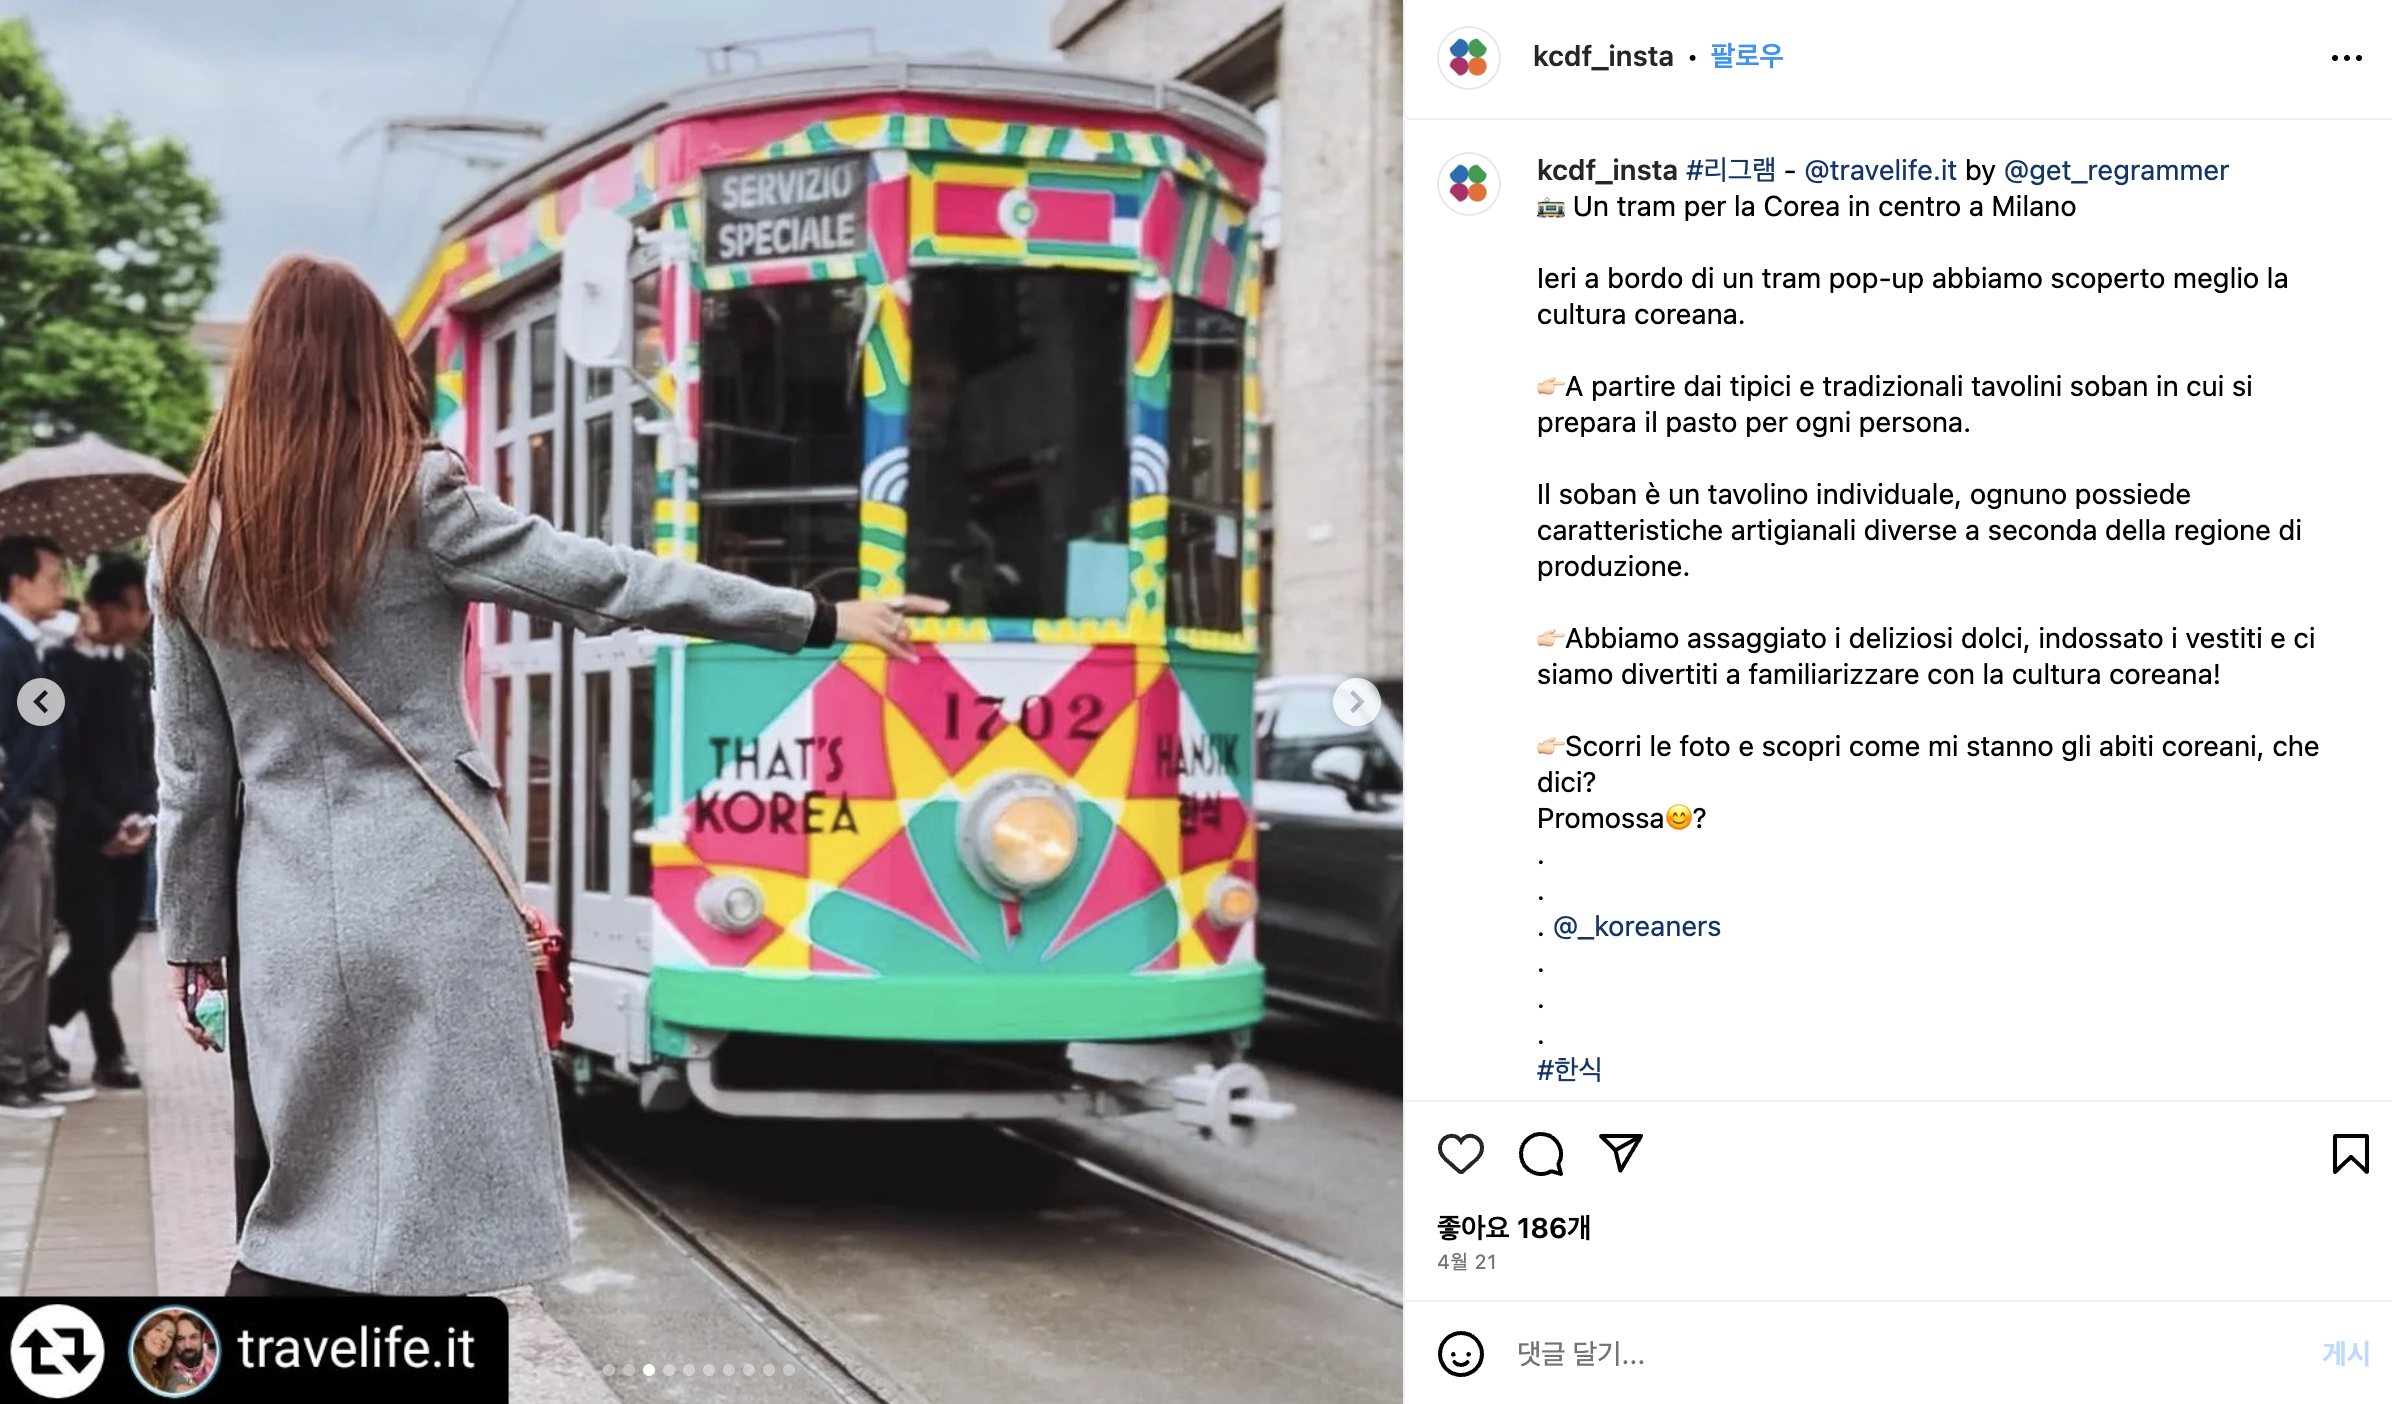 < '이것이 한식 소반이다'라는 주제로 한식을 싣고 운행하는 트램 - 출처: 한국공예·디자인문화진흥원 인스타그램 계정(@kcdf_insta) >